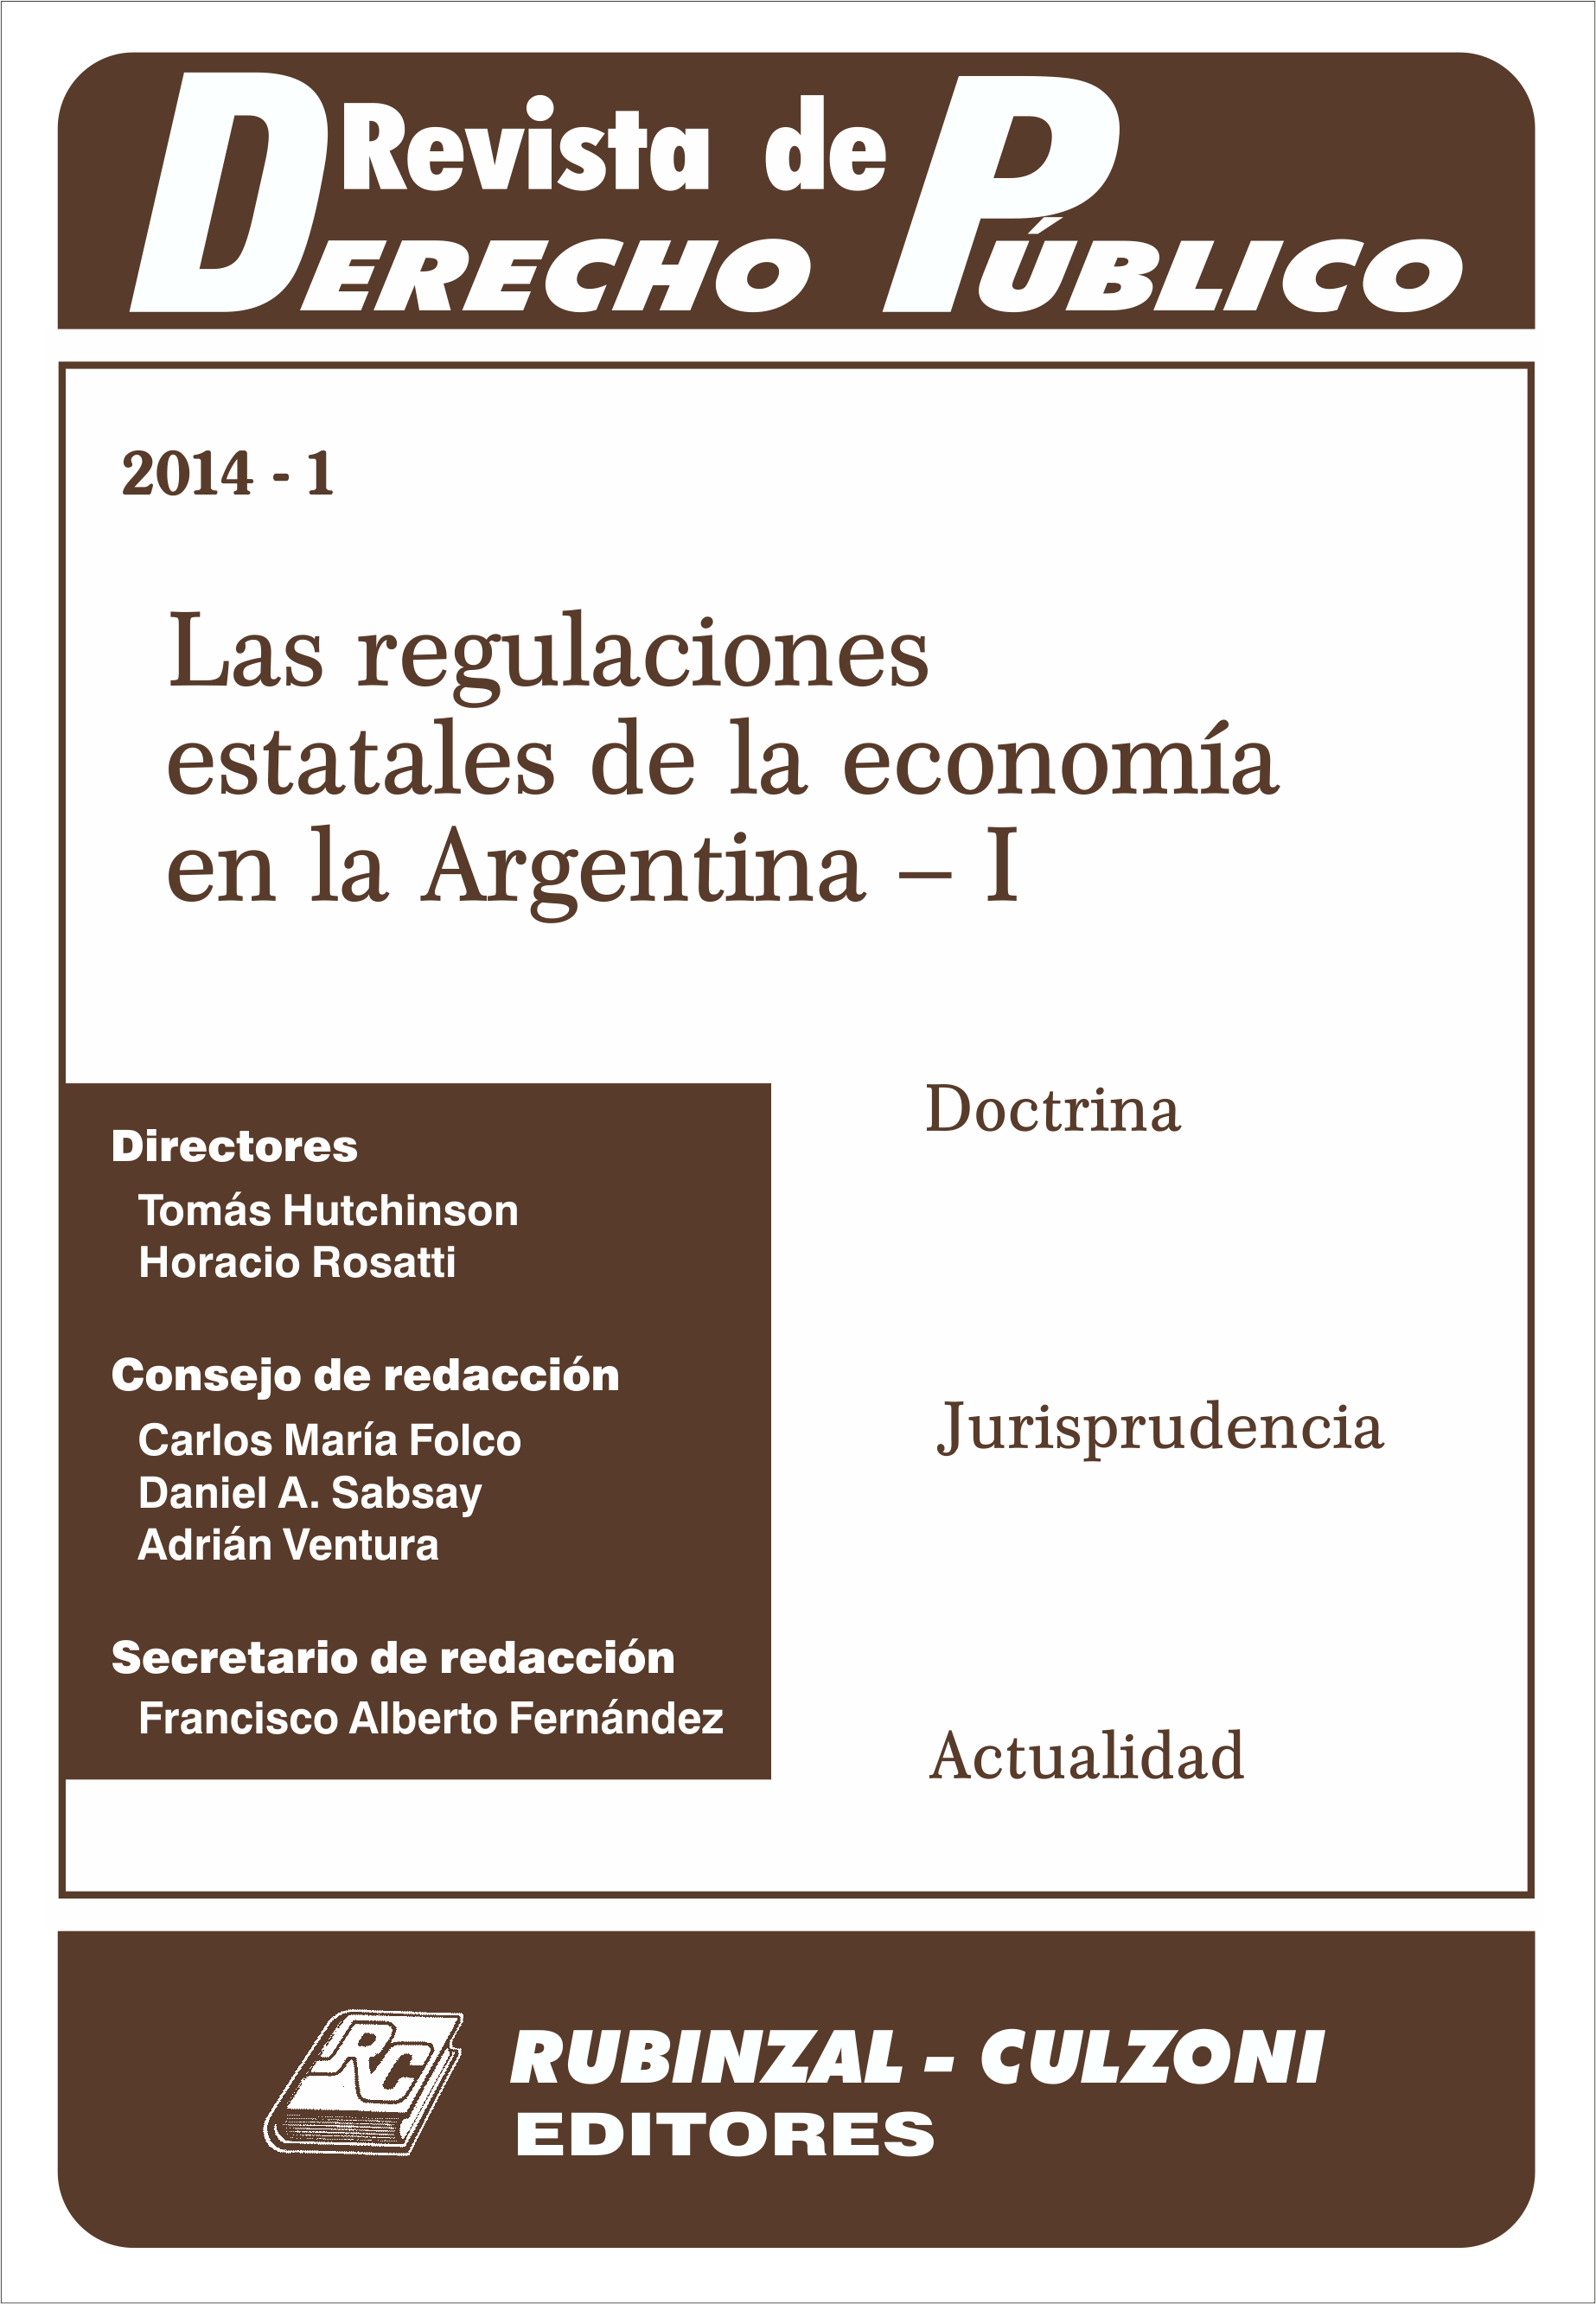 Las regulaciones estatales de la economía en la Argentina - I. [2014-1]